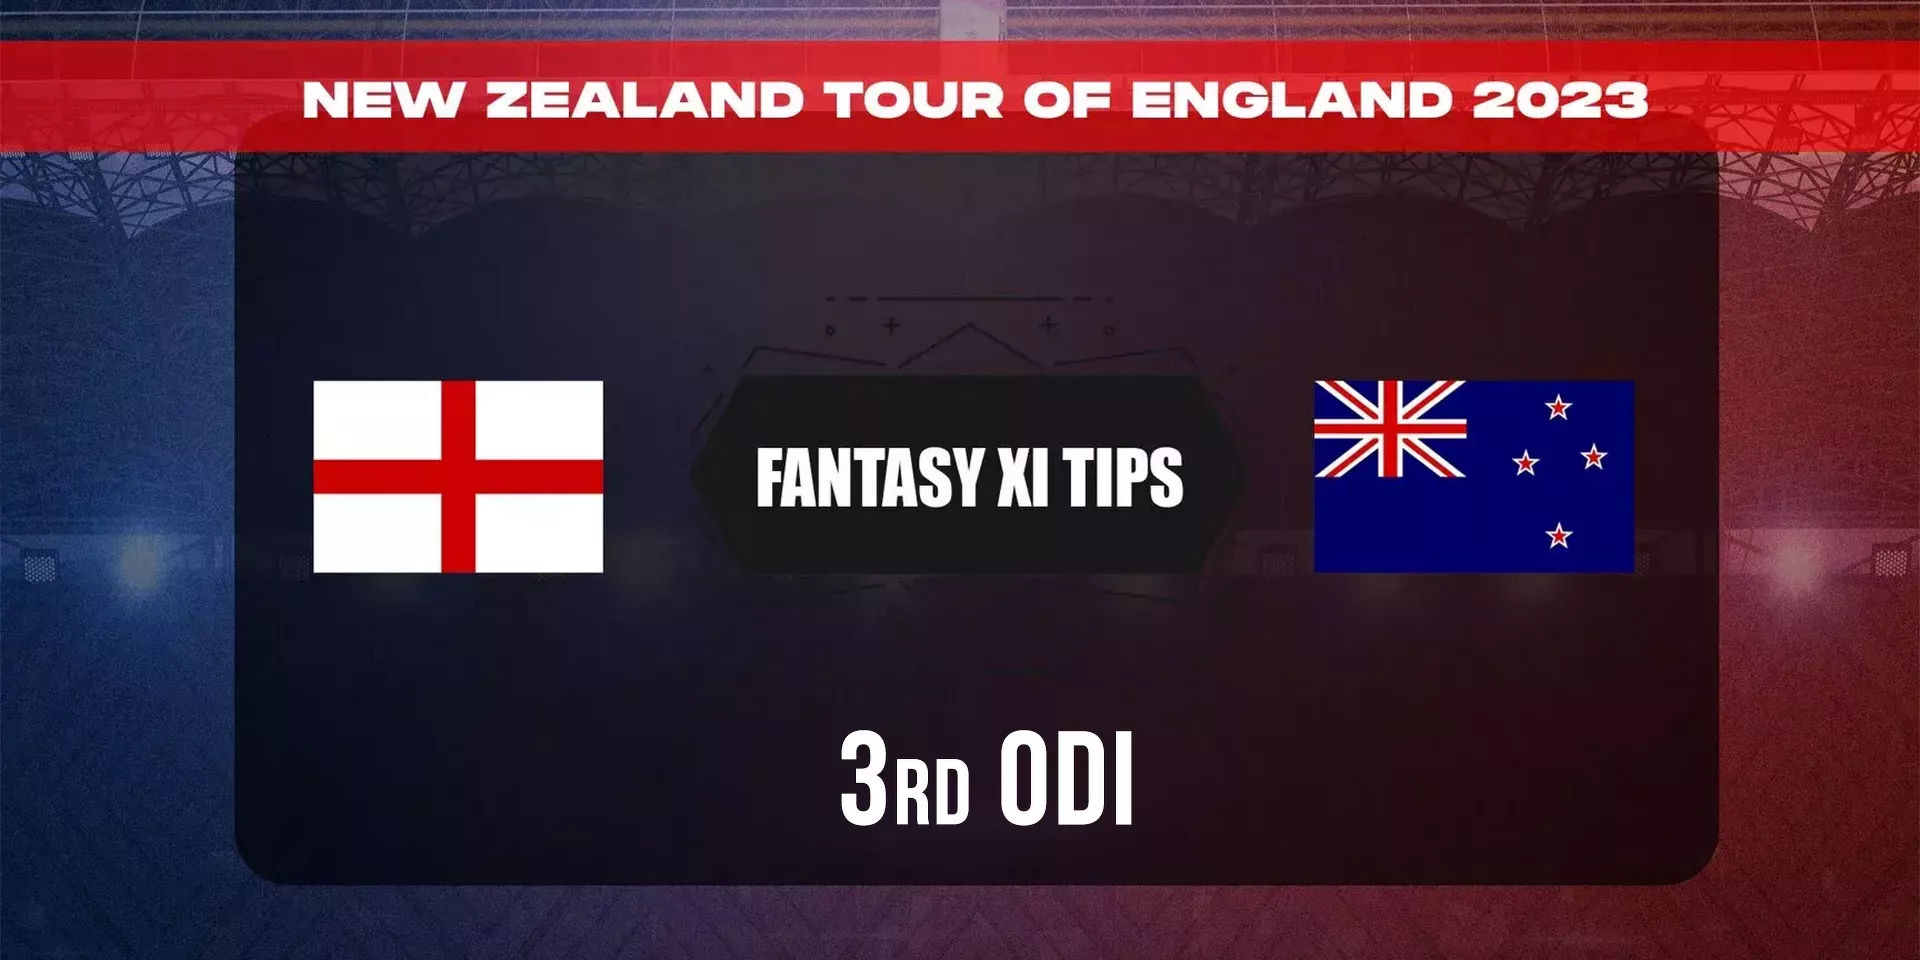 ENG vs NZ 3rd ODI: Dream11 predictions, fantasy predictions, कप्तान किसे चुने, प्लेइंग 11